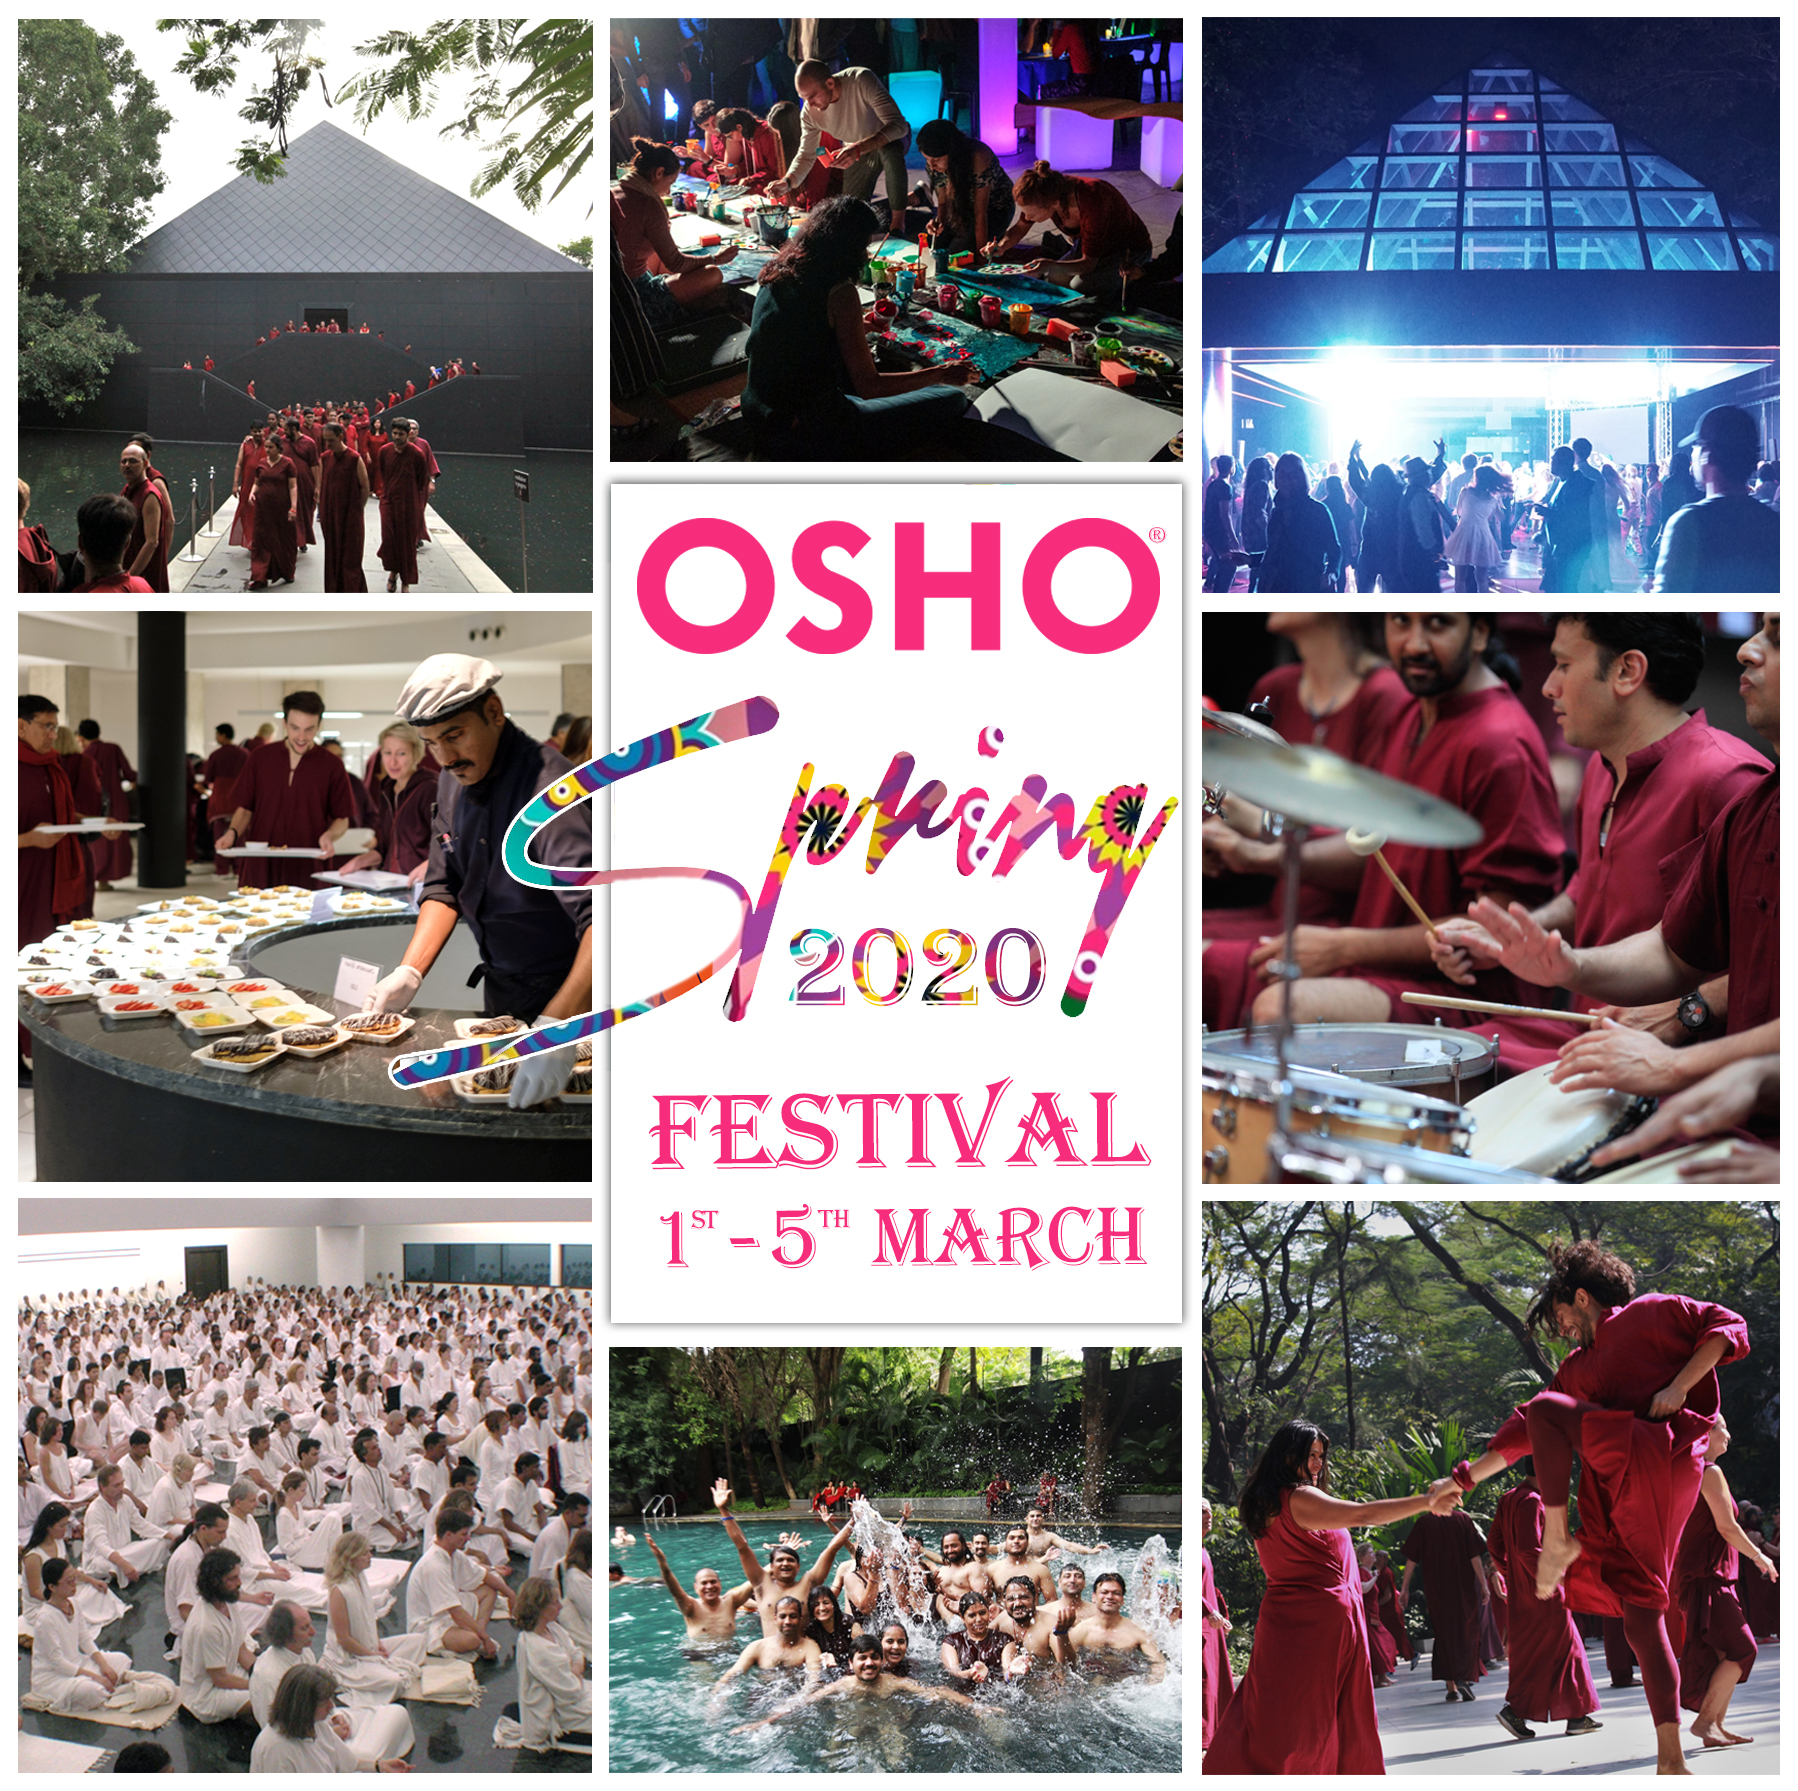 Osho Spring Festival 2020 Osho Transform Yourself Through The